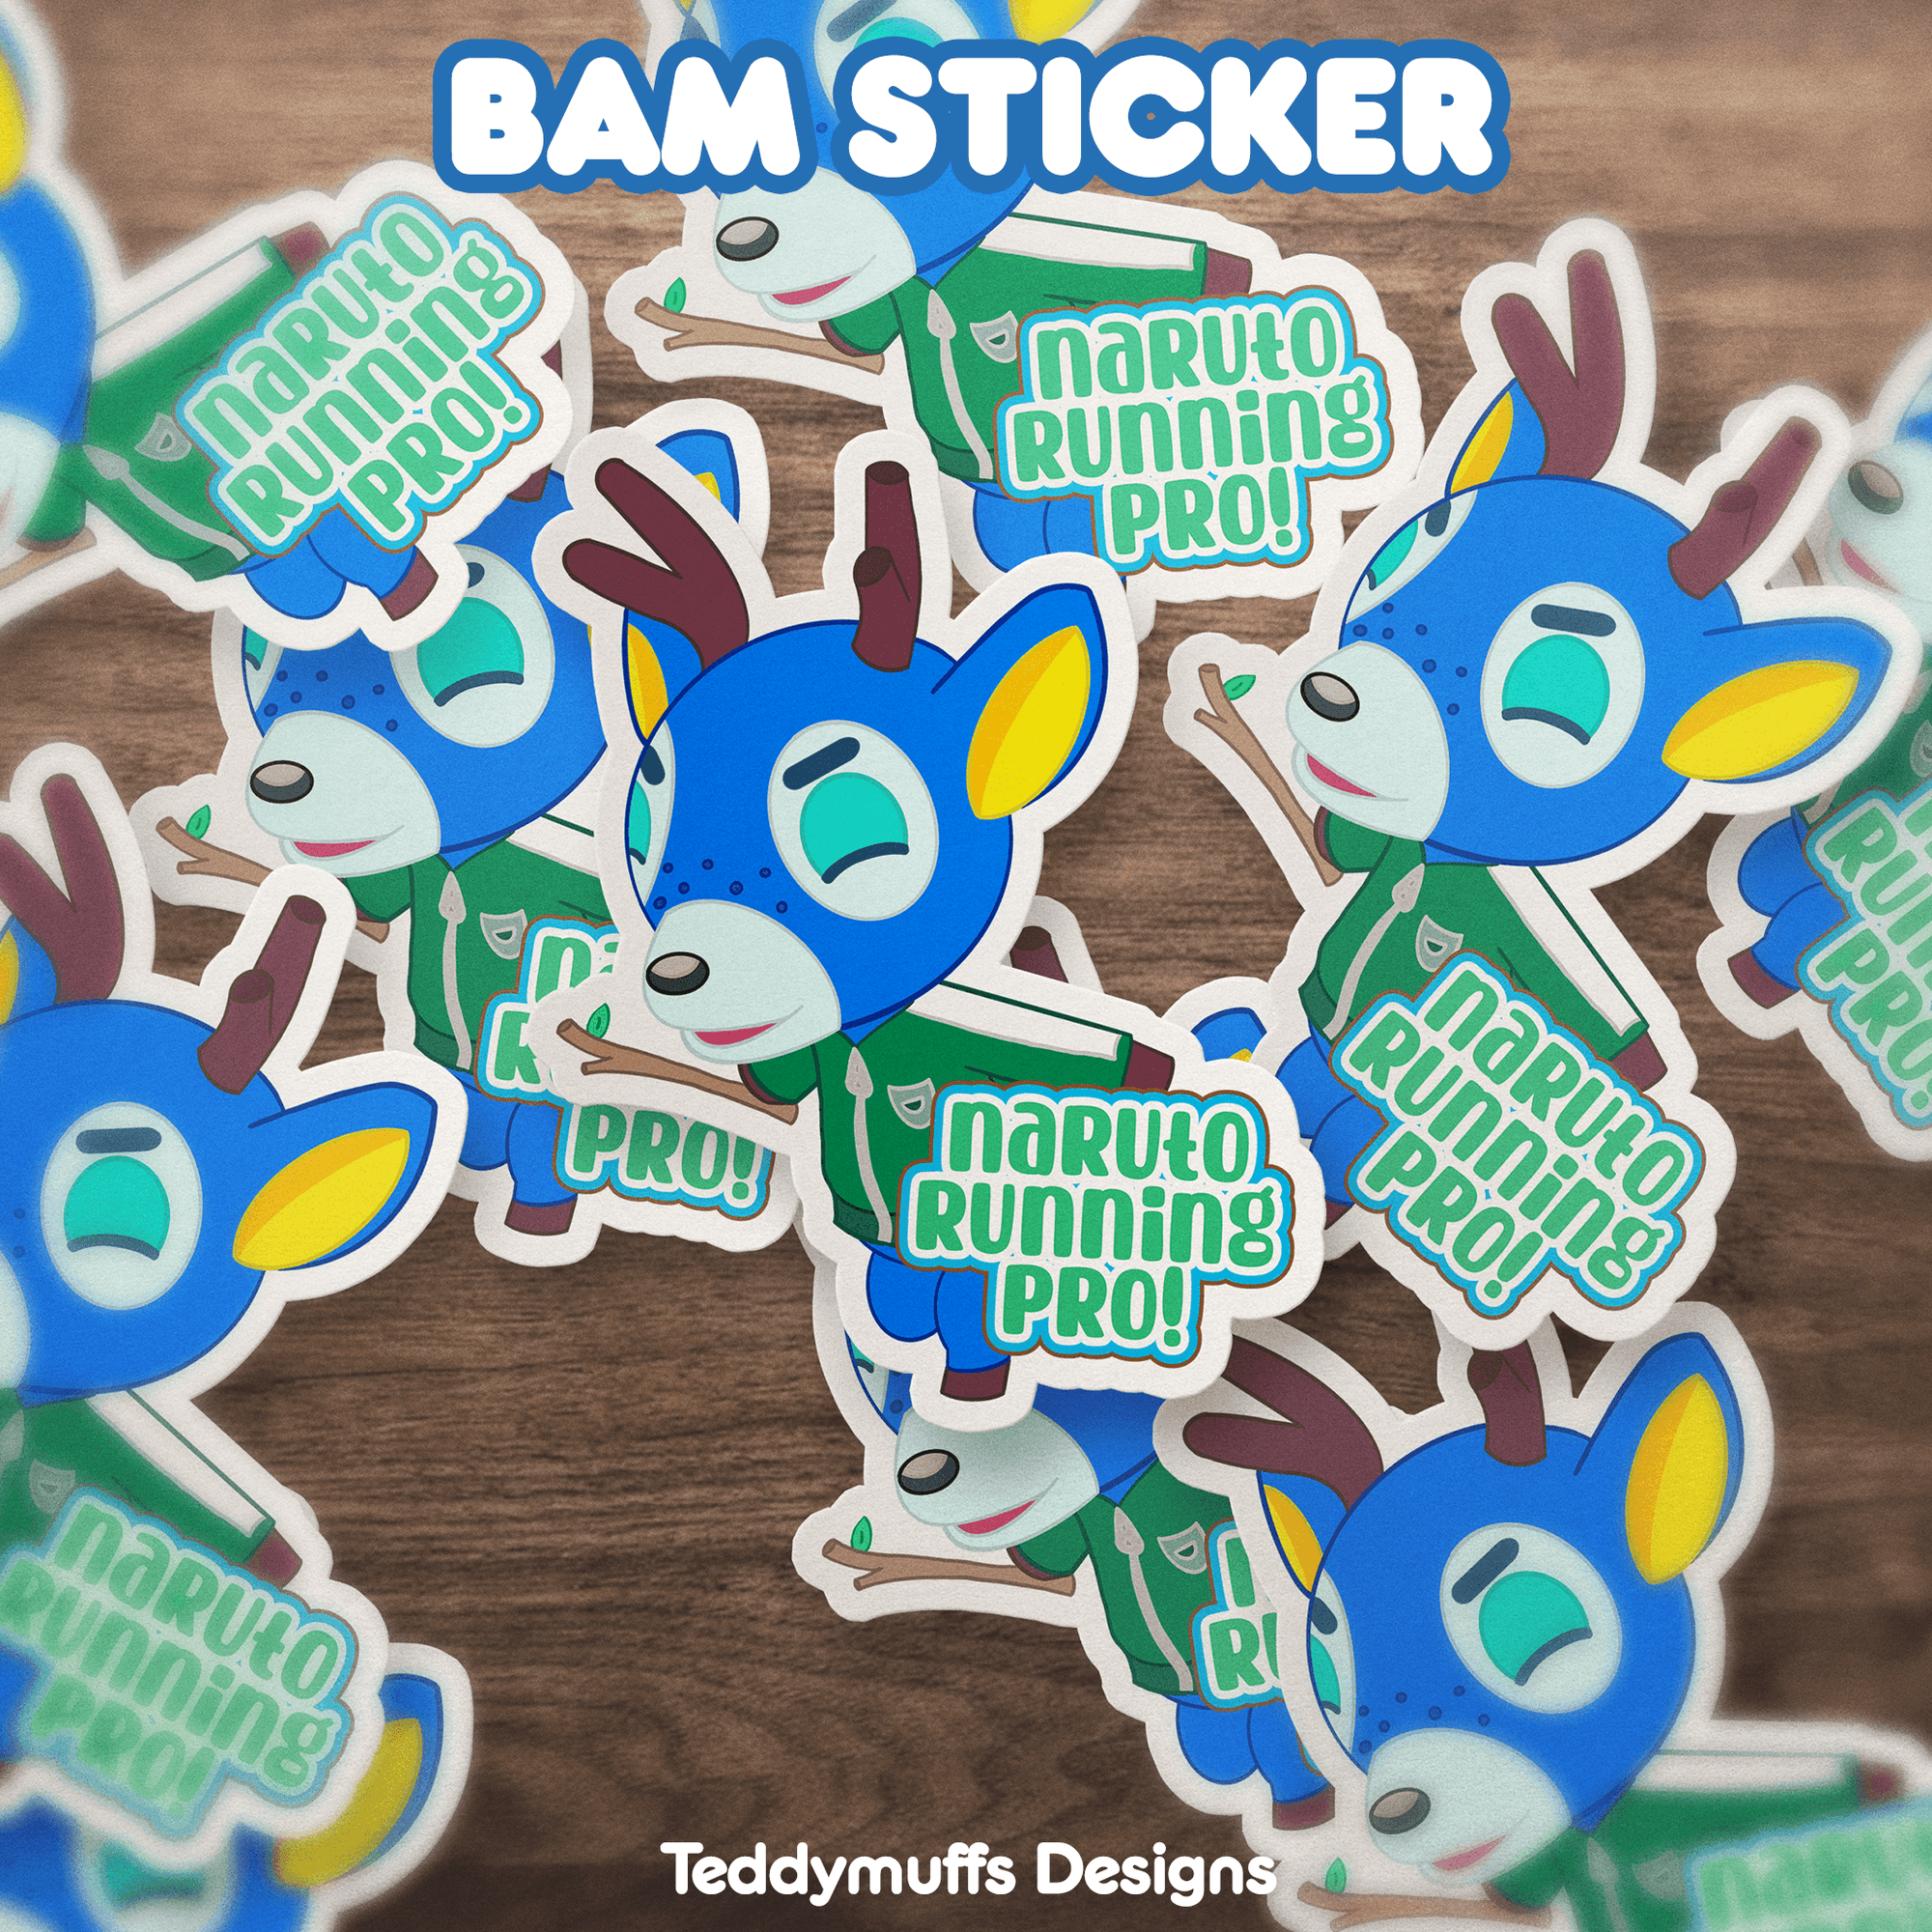 Bam "Pro Runner" Sticker - Teddymuffs Designs